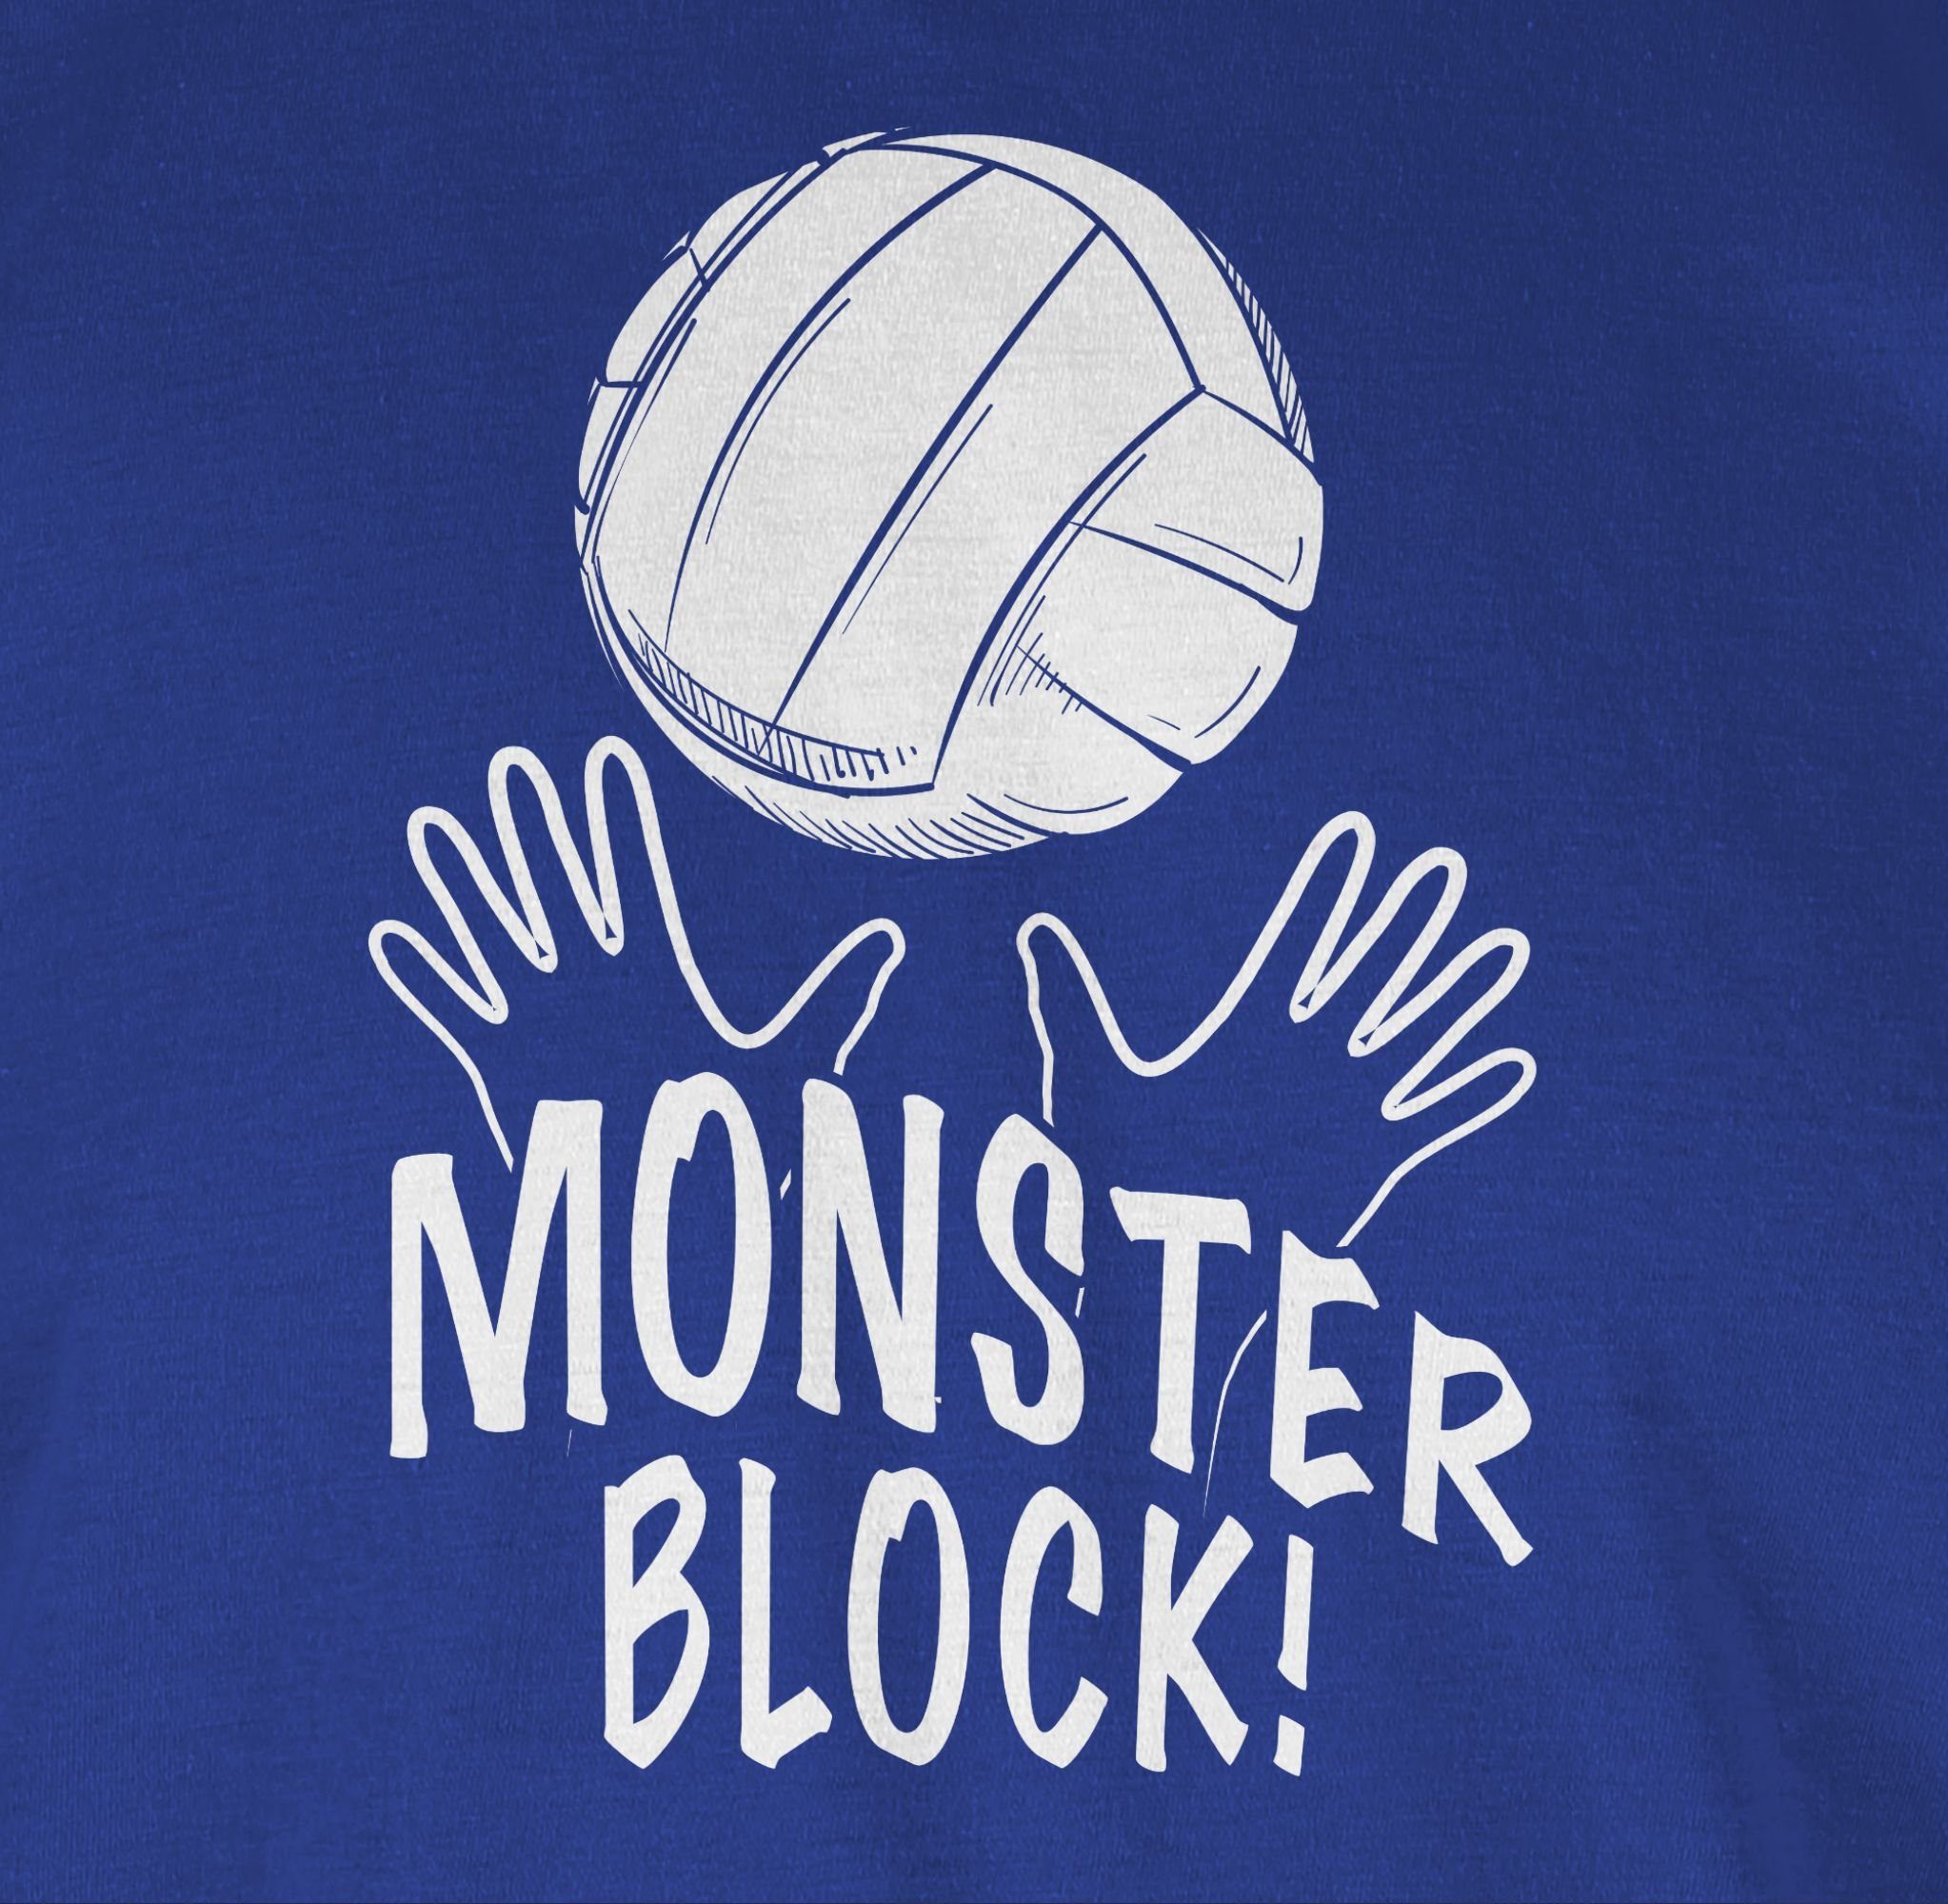 Royalblau Geschenke 02 T-Shirt Monsterblock! Volleyball Shirtracer